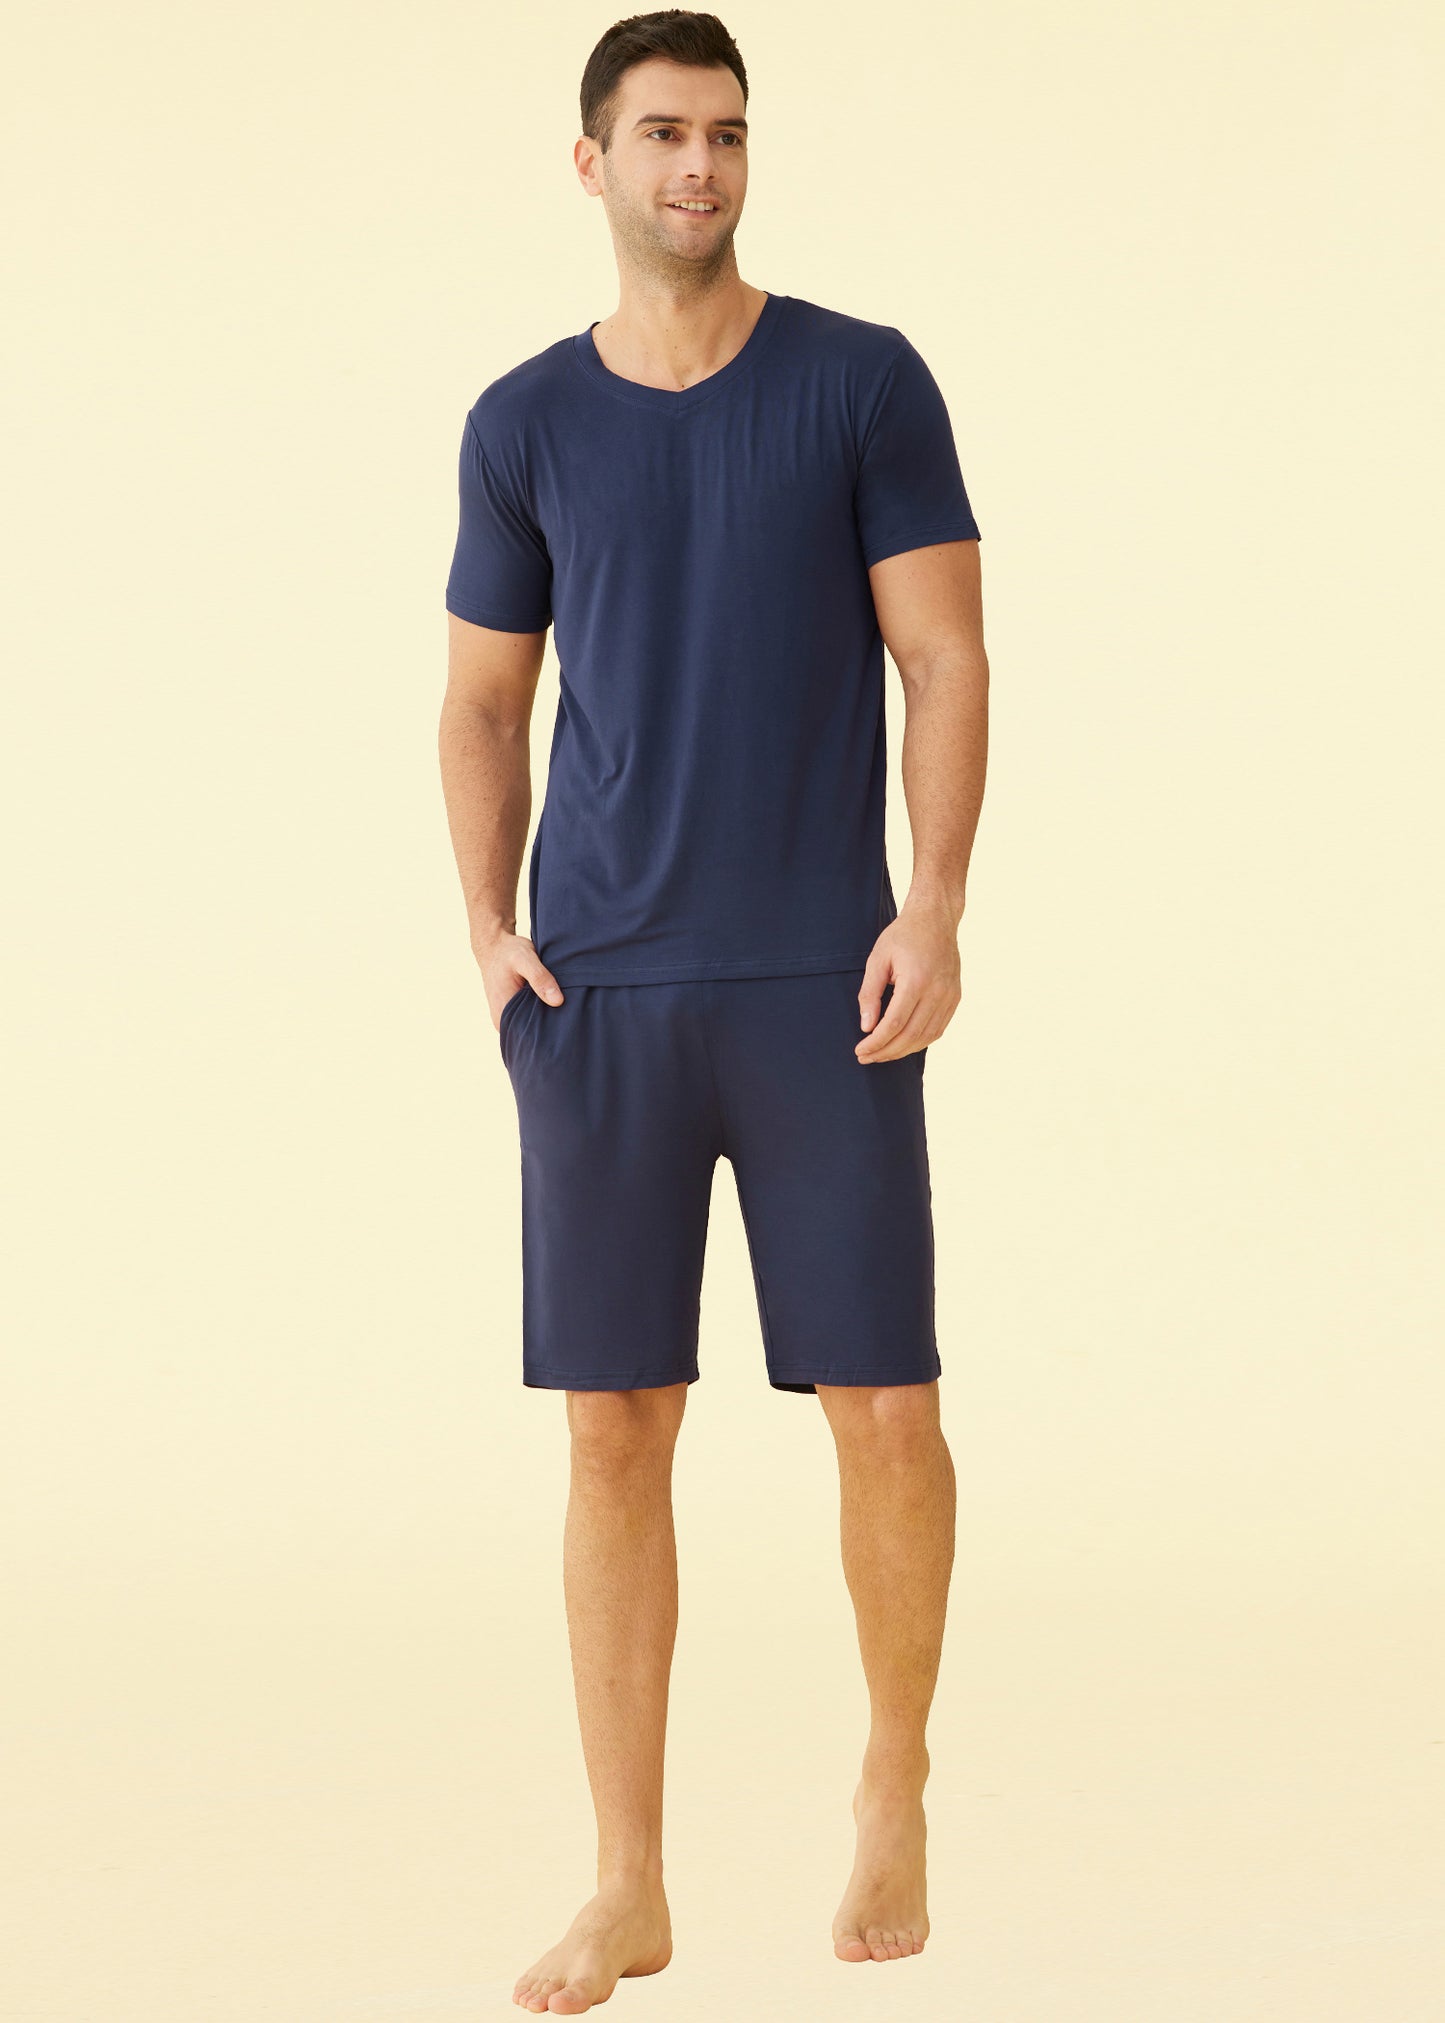 Men’s Short Sleeves and Shorts Pajama Set